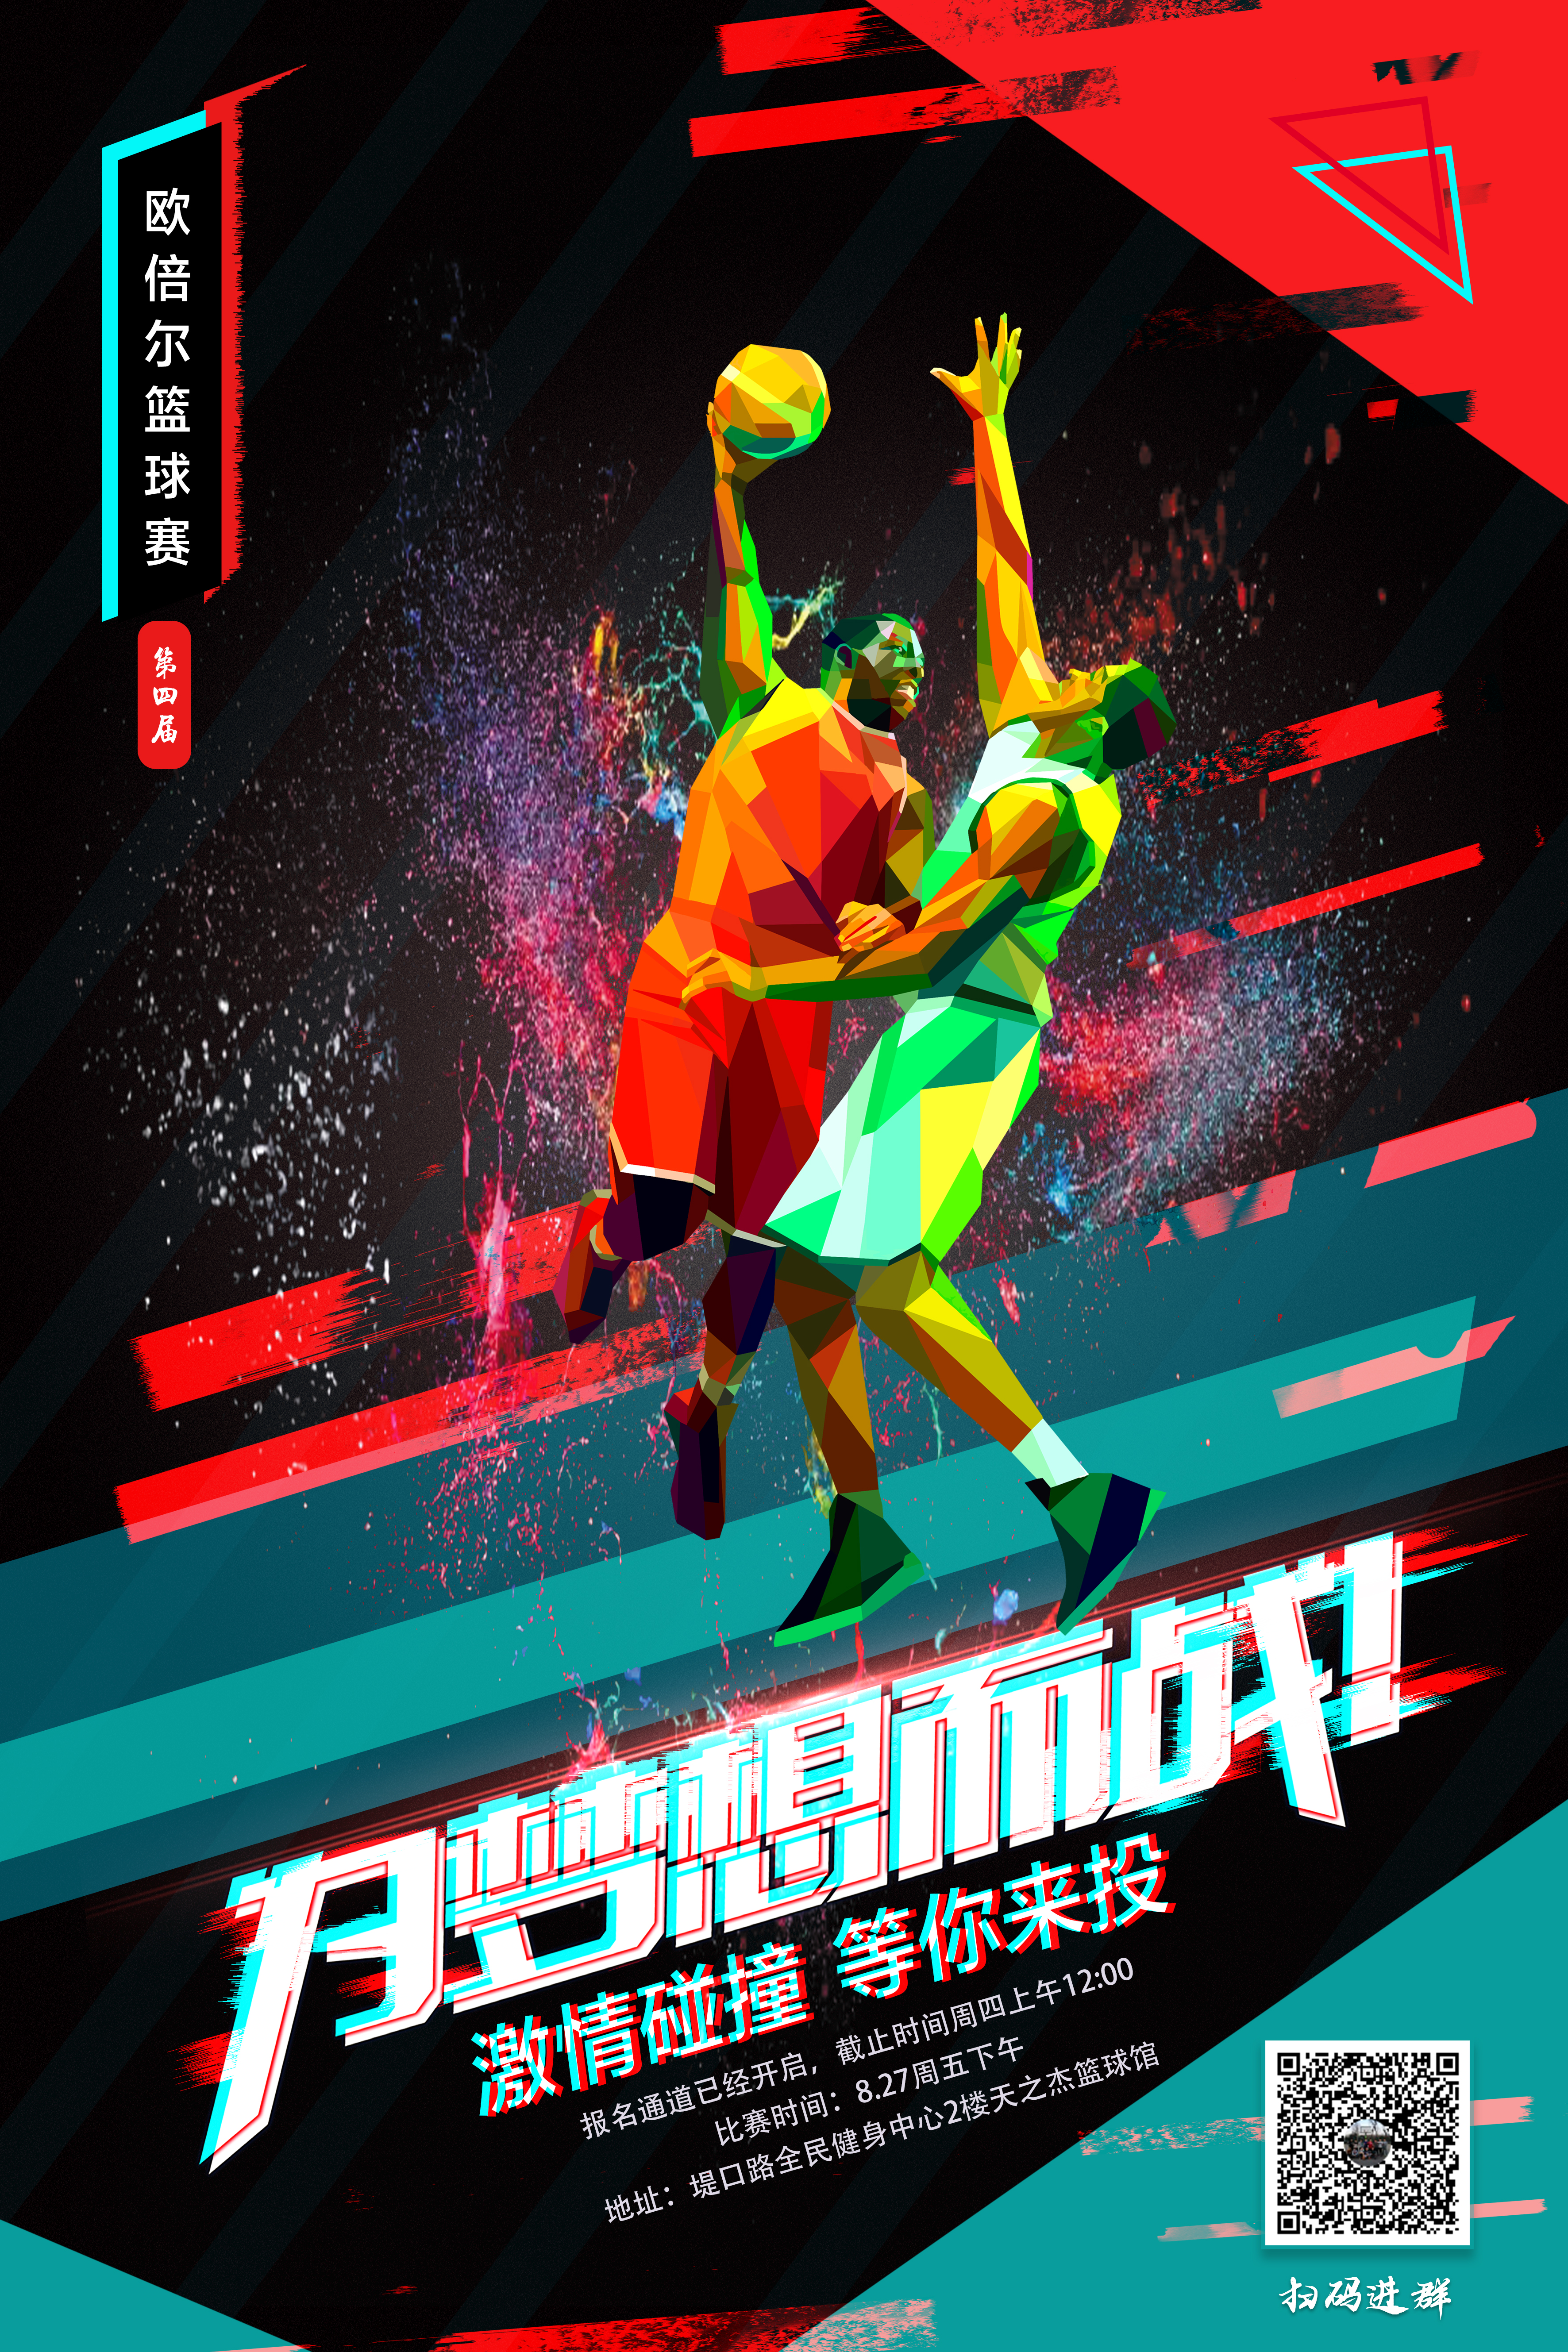 北京欧倍尔软件第四届“欧倍尔杯”篮球赛圆满落幕